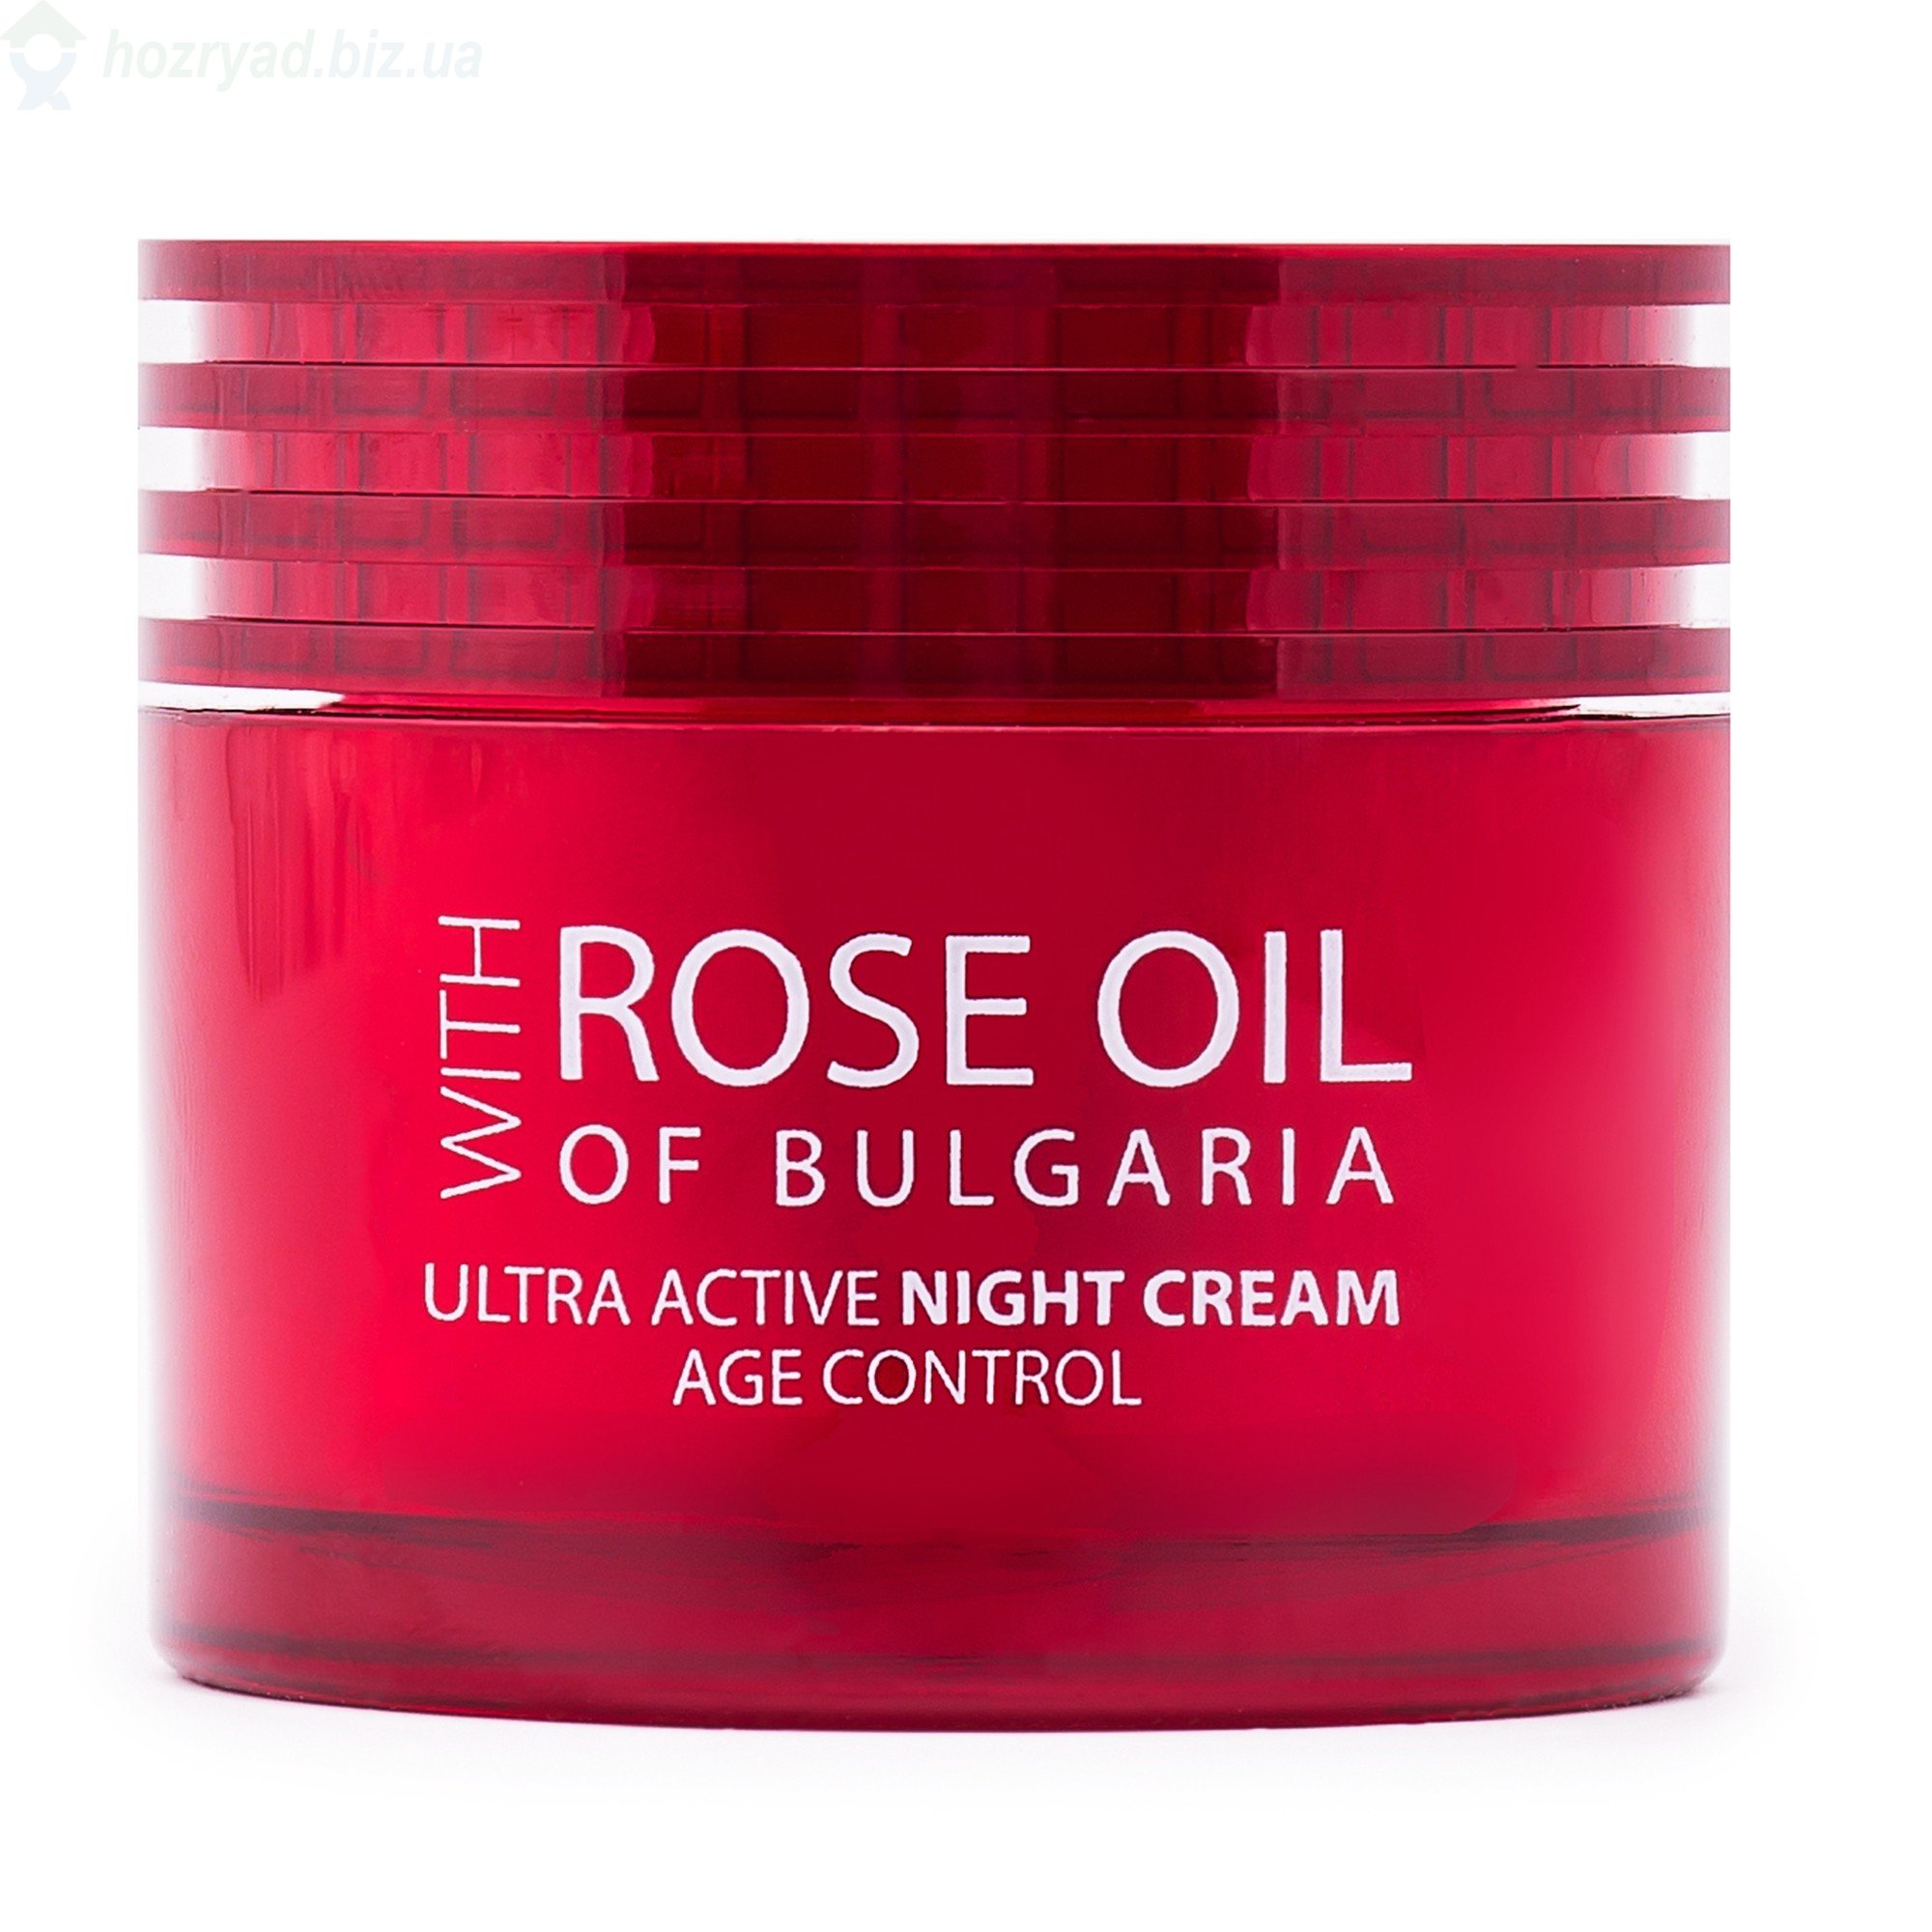      /ULTRA ACTIVE NIGHT CREAM ROSE OIL OF BULGARIA